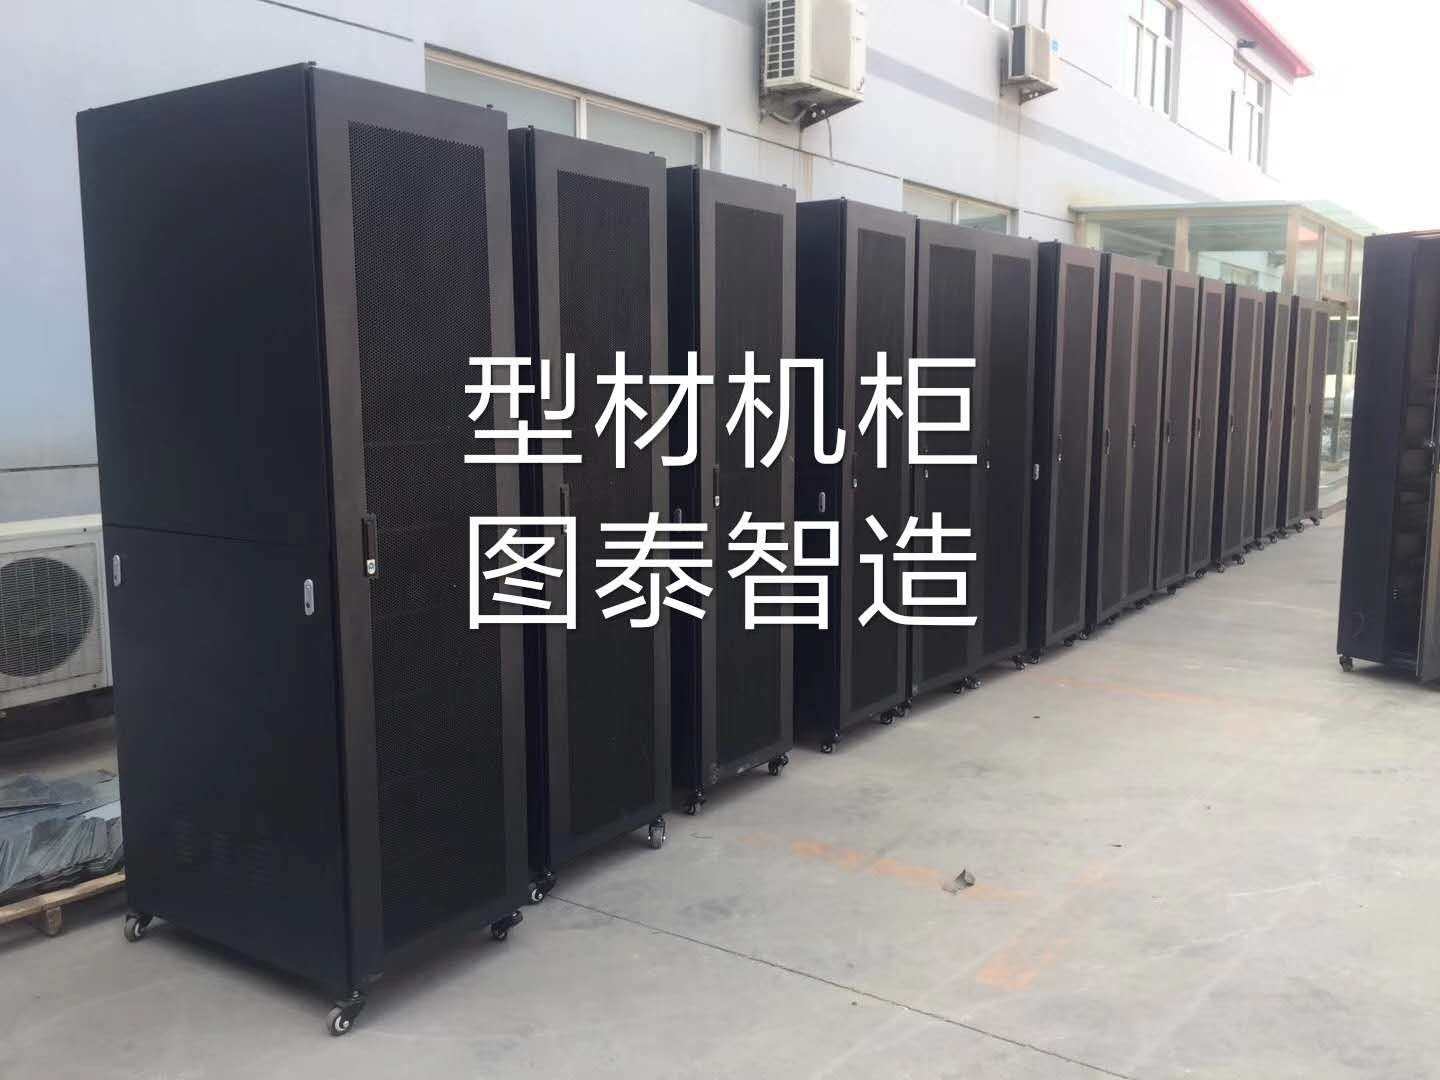 16折型材机柜、十六折型材服务器机柜、数据中心机柜